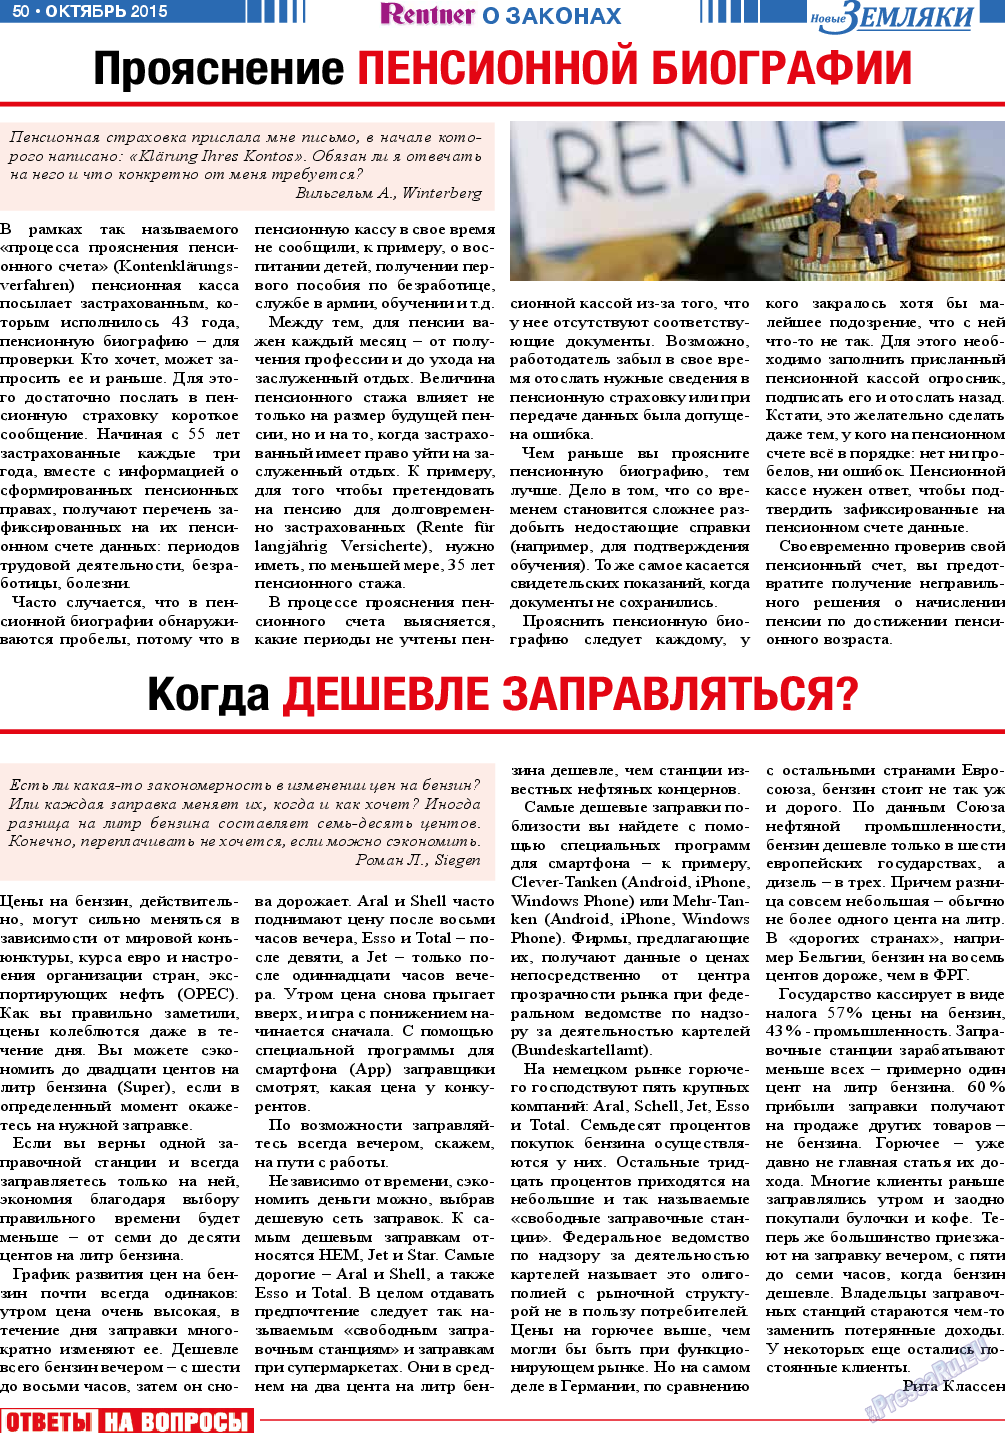 Новые Земляки (газета). 2015 год, номер 10, стр. 50